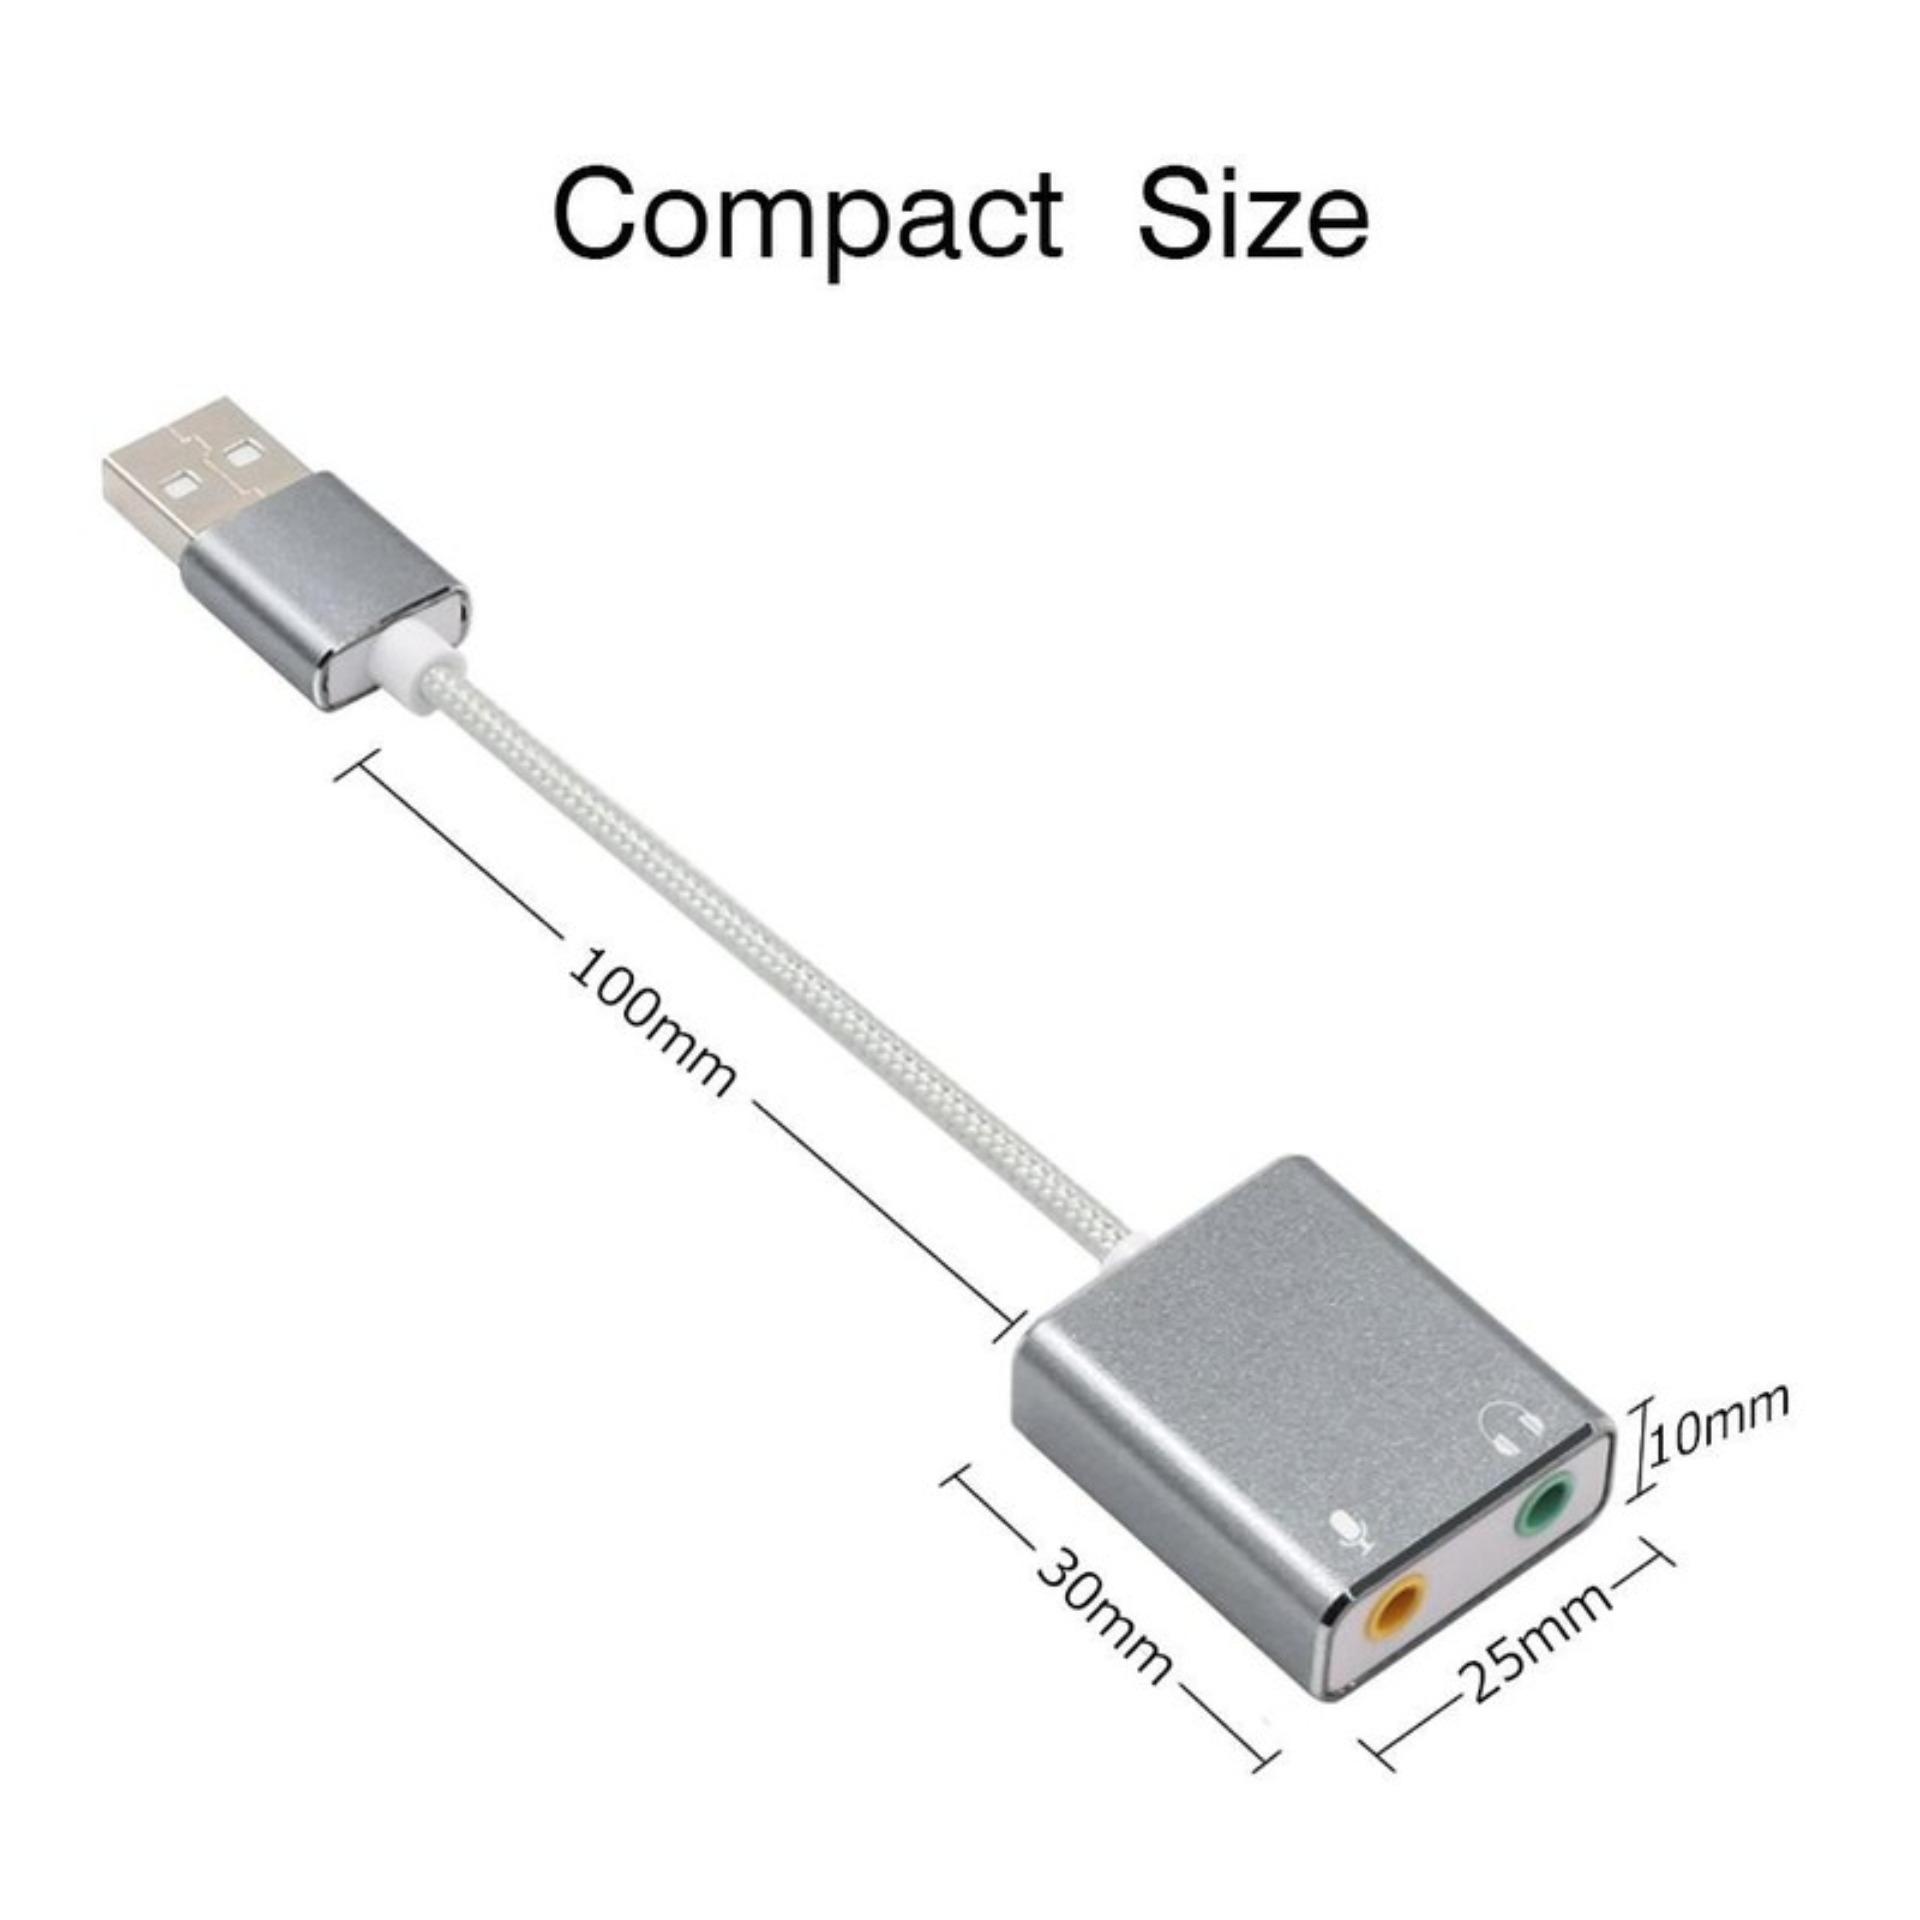 Sound card USB 7.1 âm thanh 3D vỏ nhôm cao cấp giá rẻ